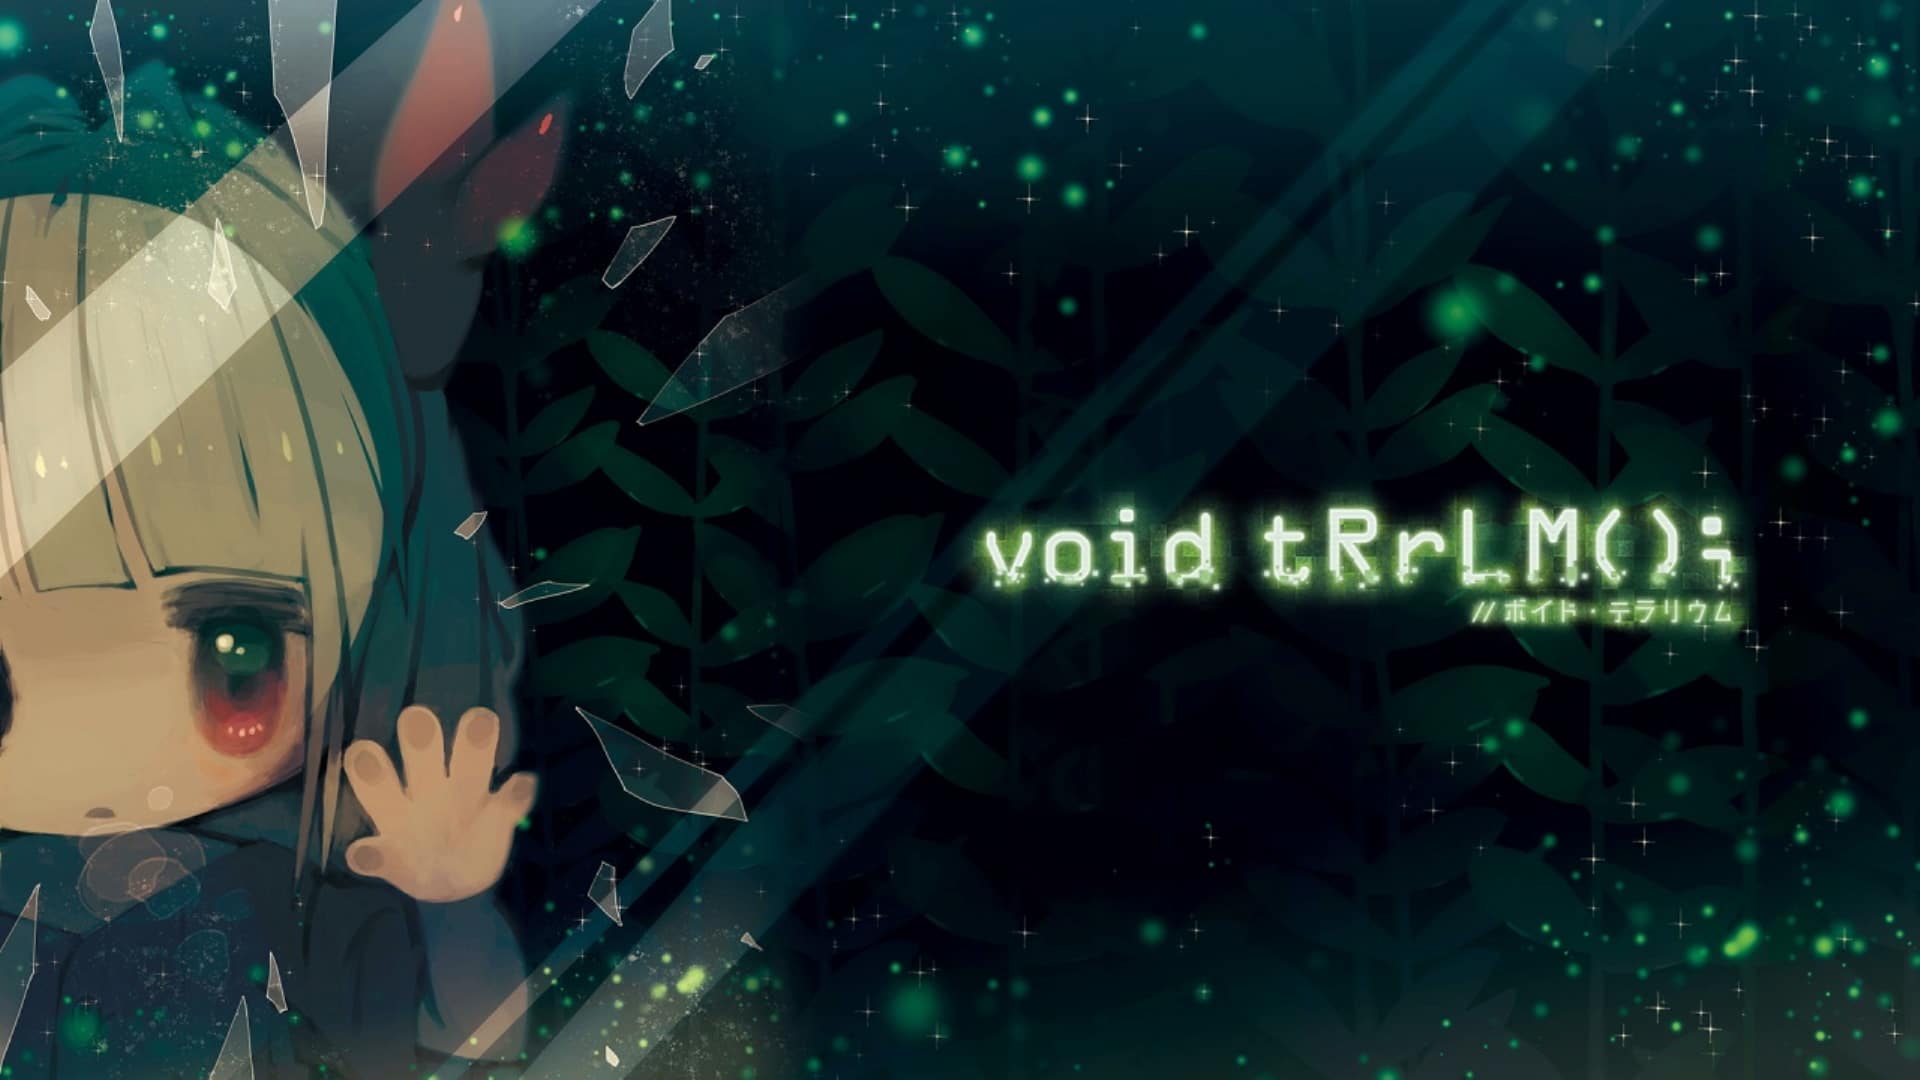 Void tRrLM(); //Void Terrarium recensione di un roguelike-Tamagotchi 2